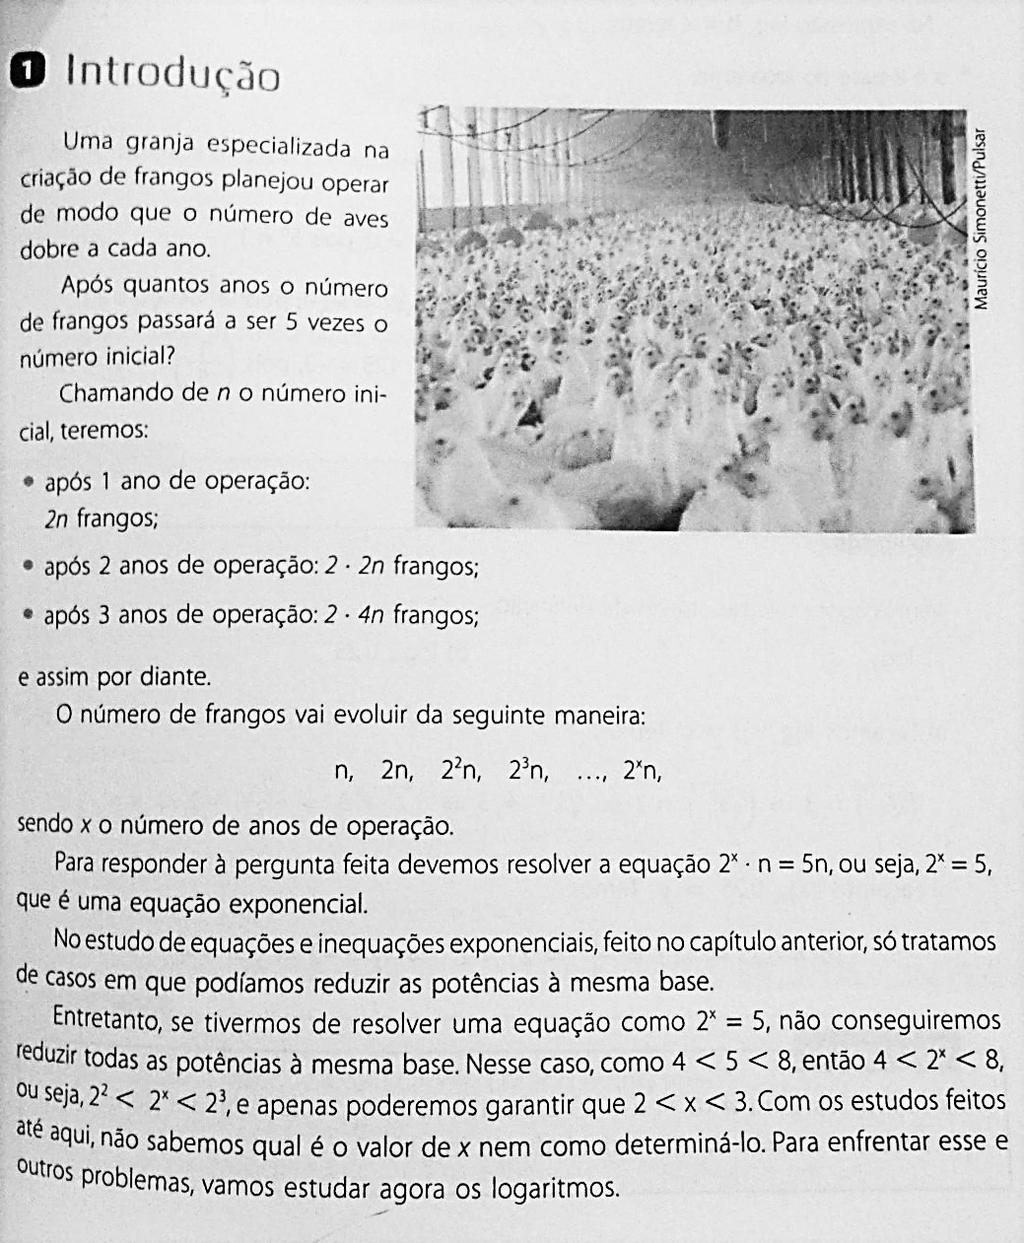 71 Figura 29 exemplo de introdução a teoria dos logaritmos IEZZI, Gelson. Fundamentos da Matemática Elementar. ATUAL, 2004, São Paulo. p.